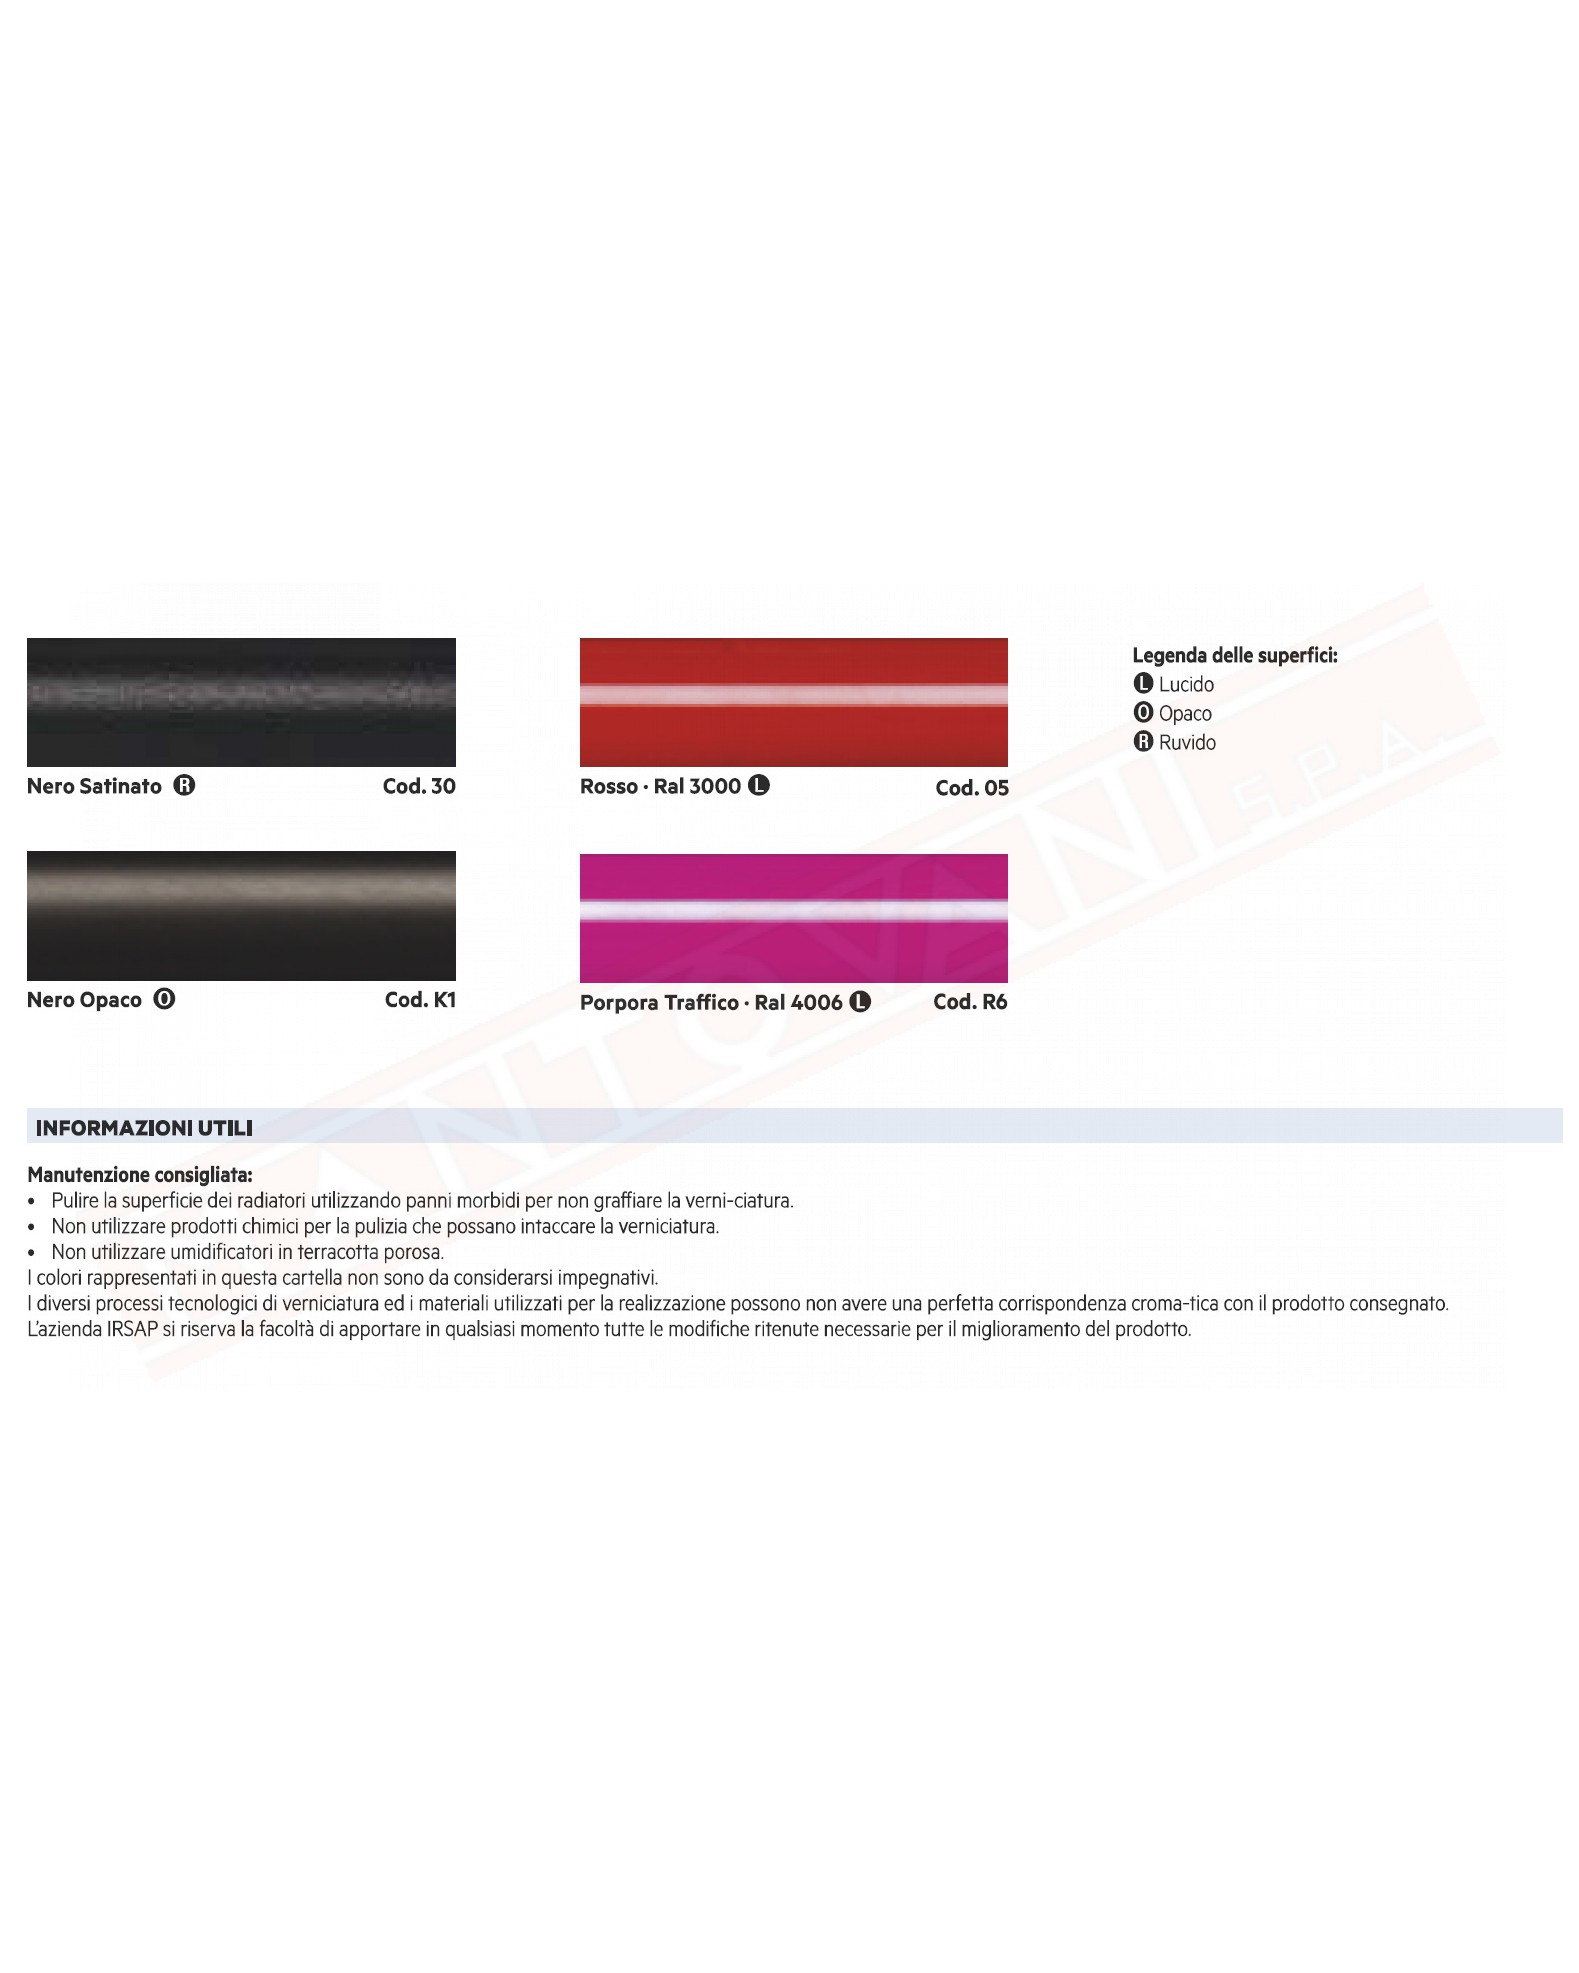 Irsap Now valvola termostatica colorata specificare colore al postop delle xx elettronica wireless con controllo temperatura